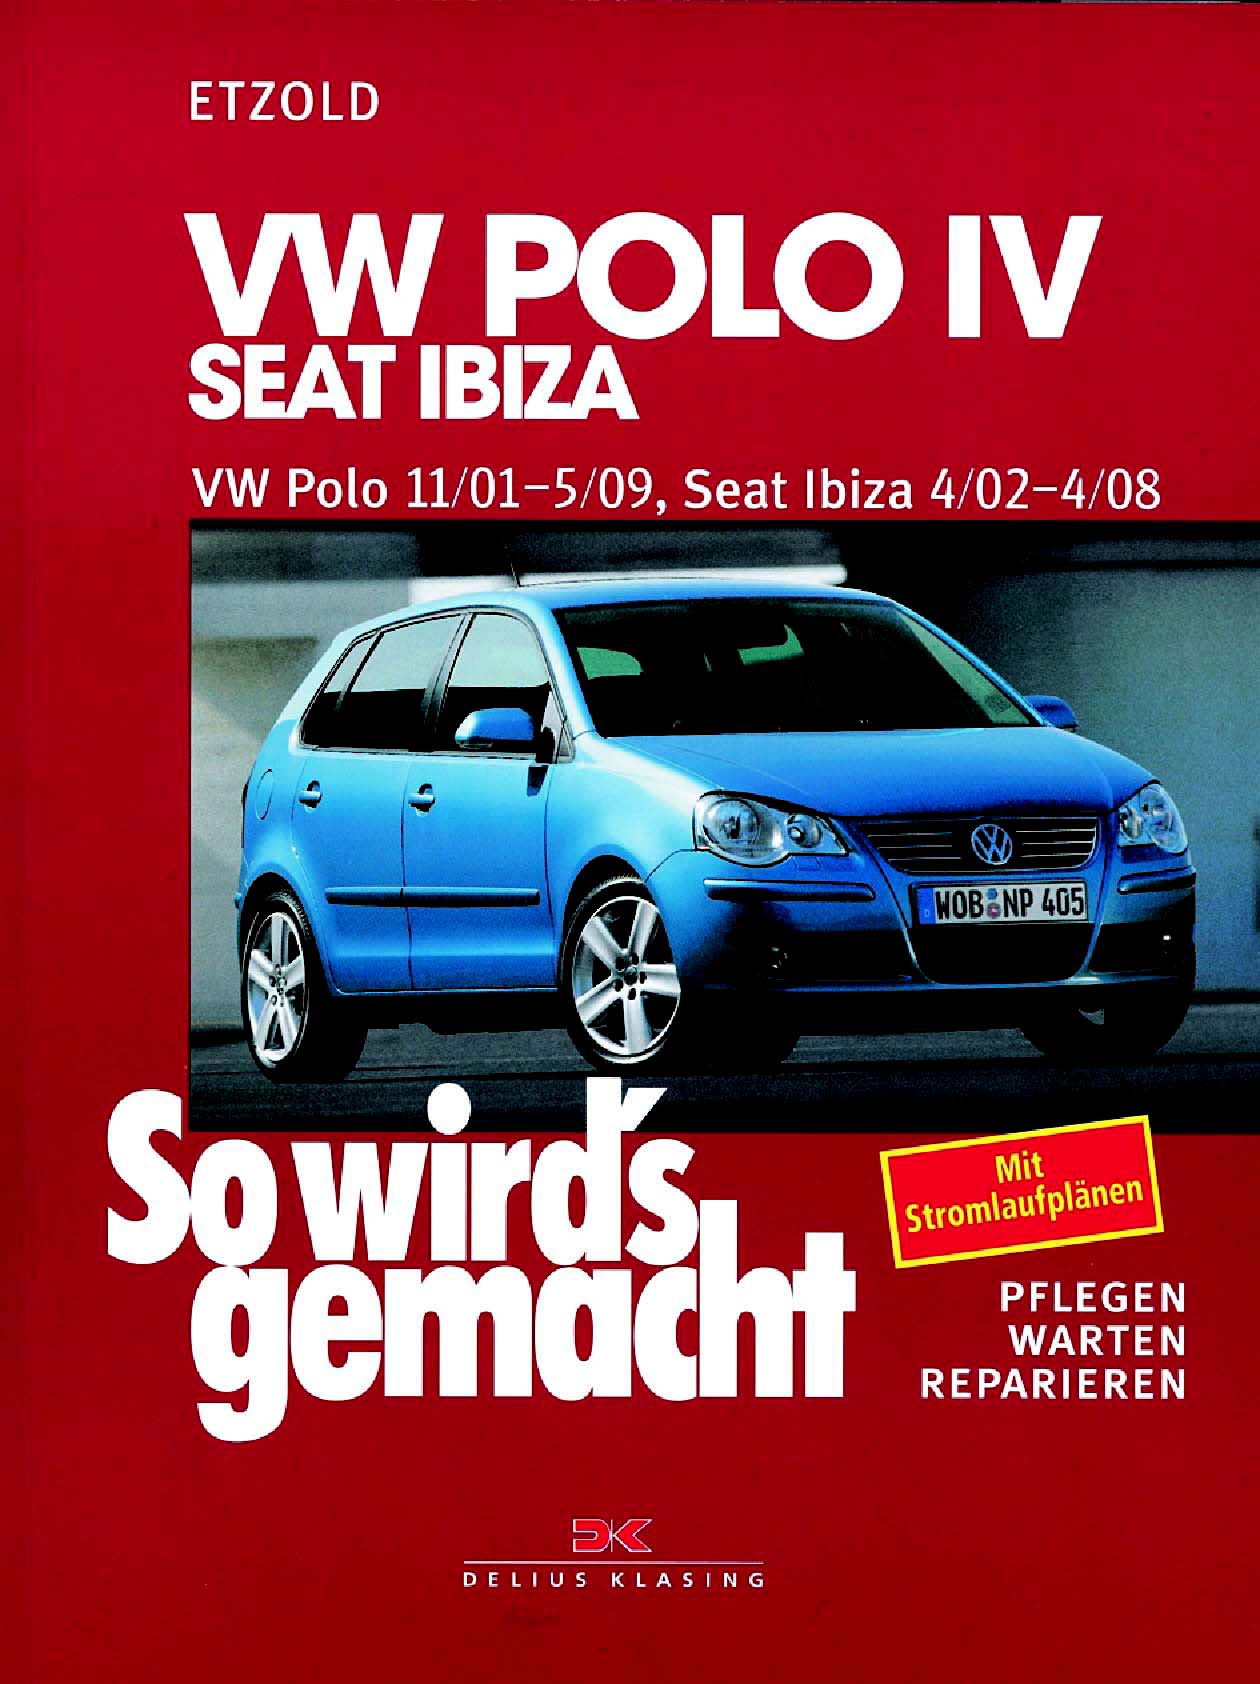 HECKKLAPPENSCHLOSS KOFFERRAUM Heckscheibe TÜRSCHLOSS VW Polo 2002